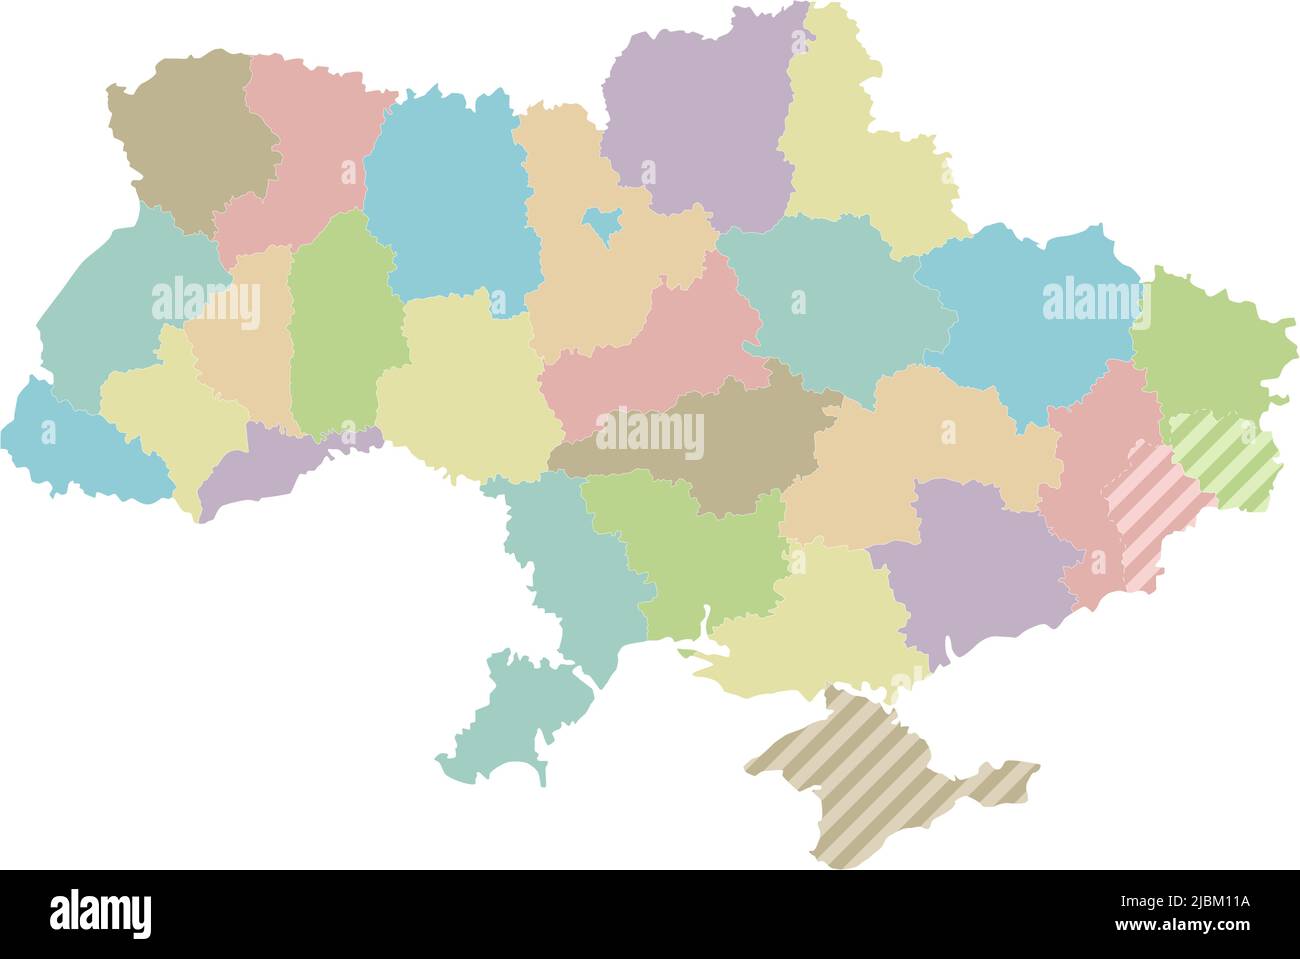 Mappa vuota dell'Ucraina con regioni, divisioni amministrative e territori rivendicati dalla Russia. Livelli modificabili e chiaramente etichettati. Illustrazione Vettoriale